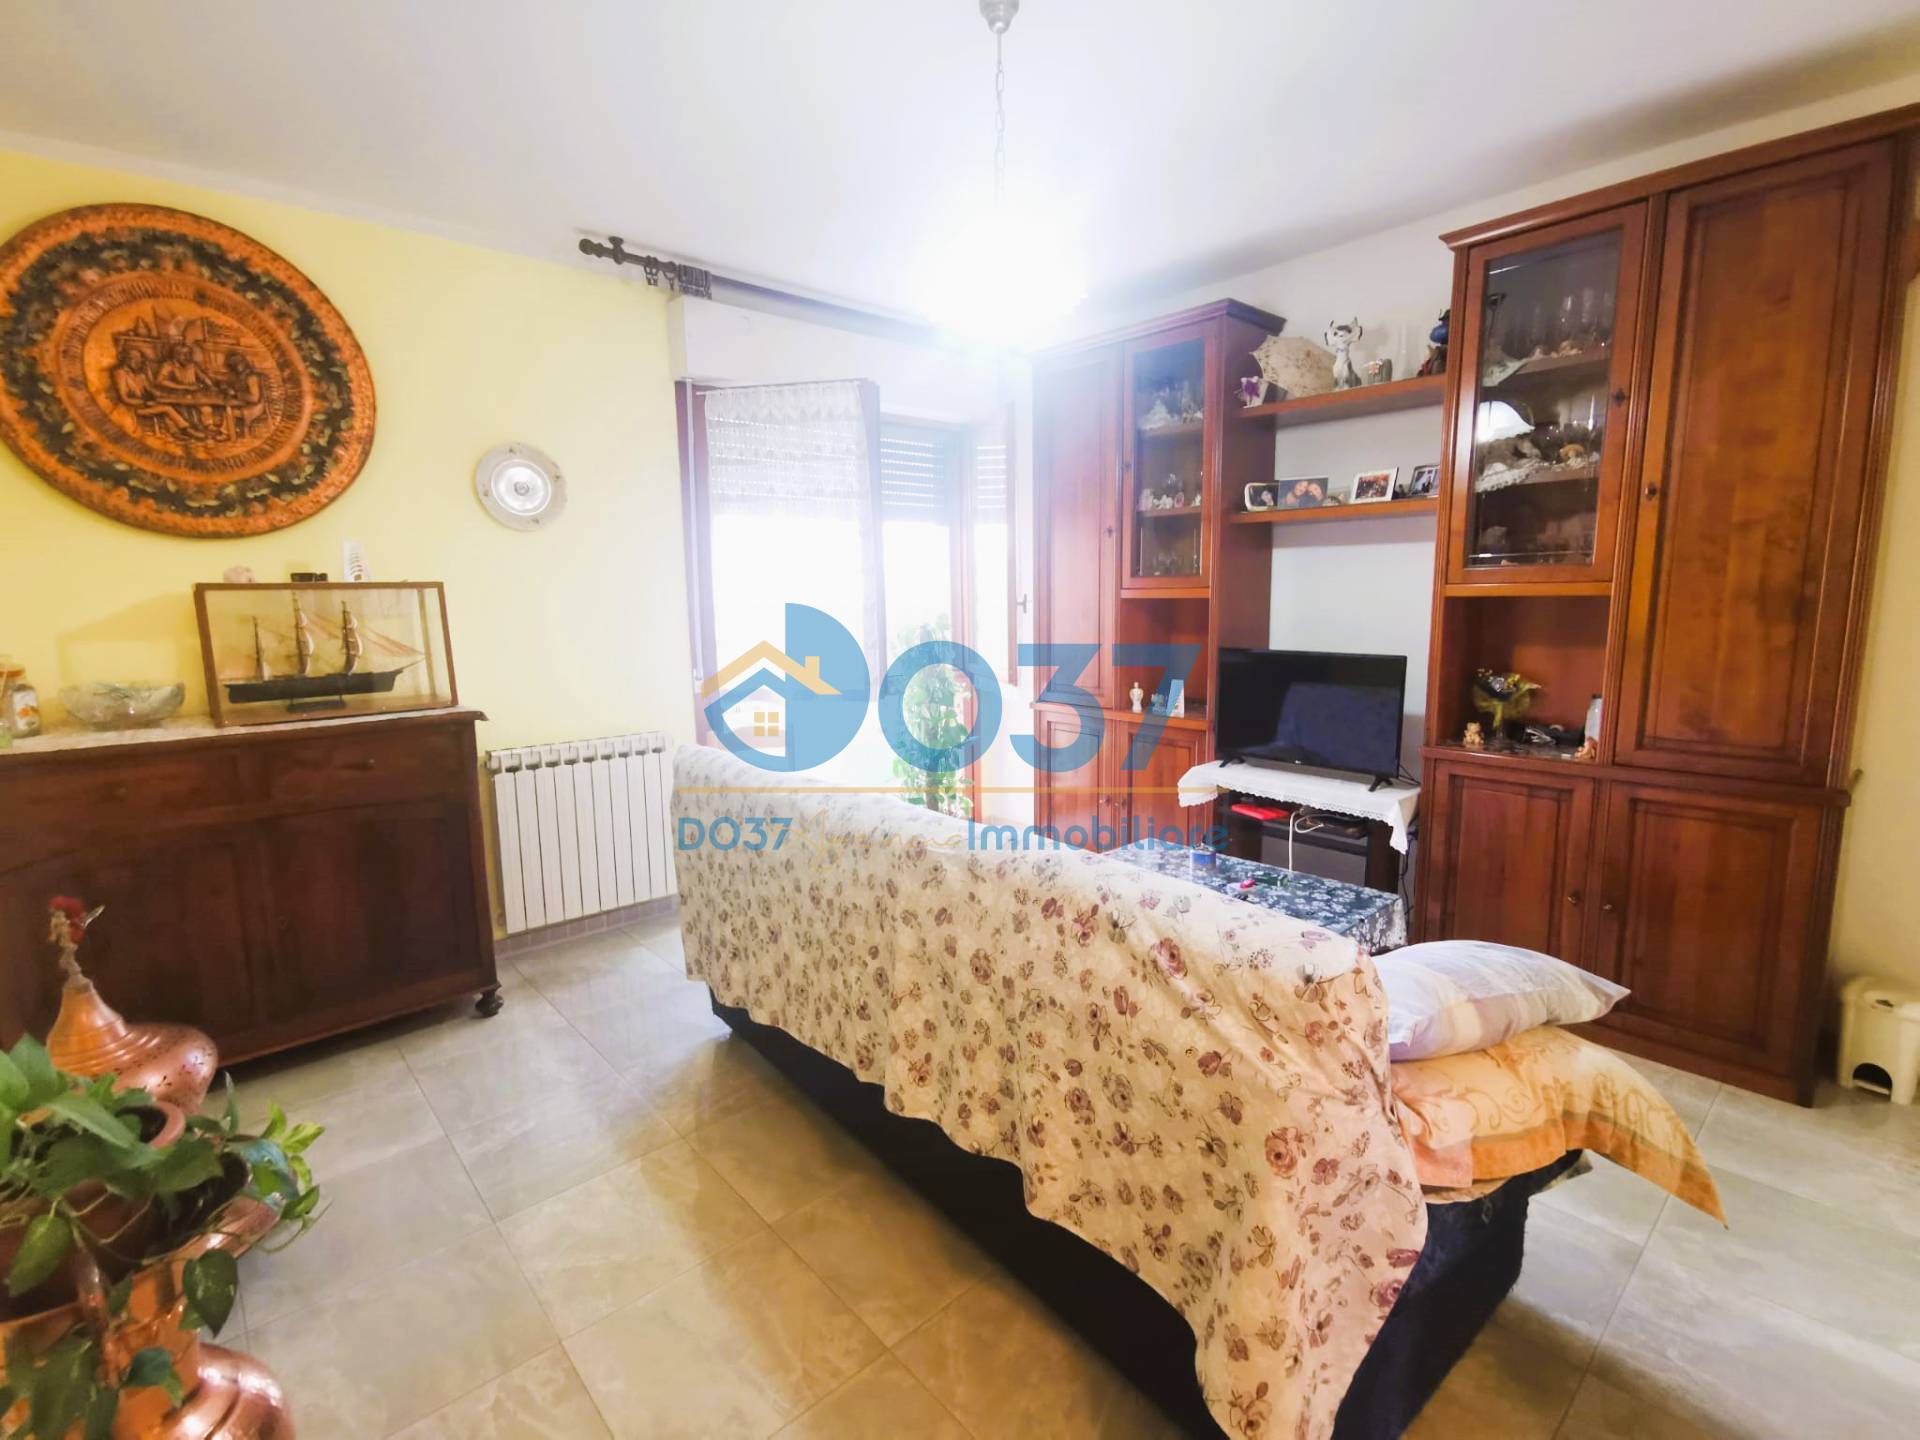 Appartamento in vendita a Campagnola Emilia, 4 locali, prezzo € 109.000 | PortaleAgenzieImmobiliari.it